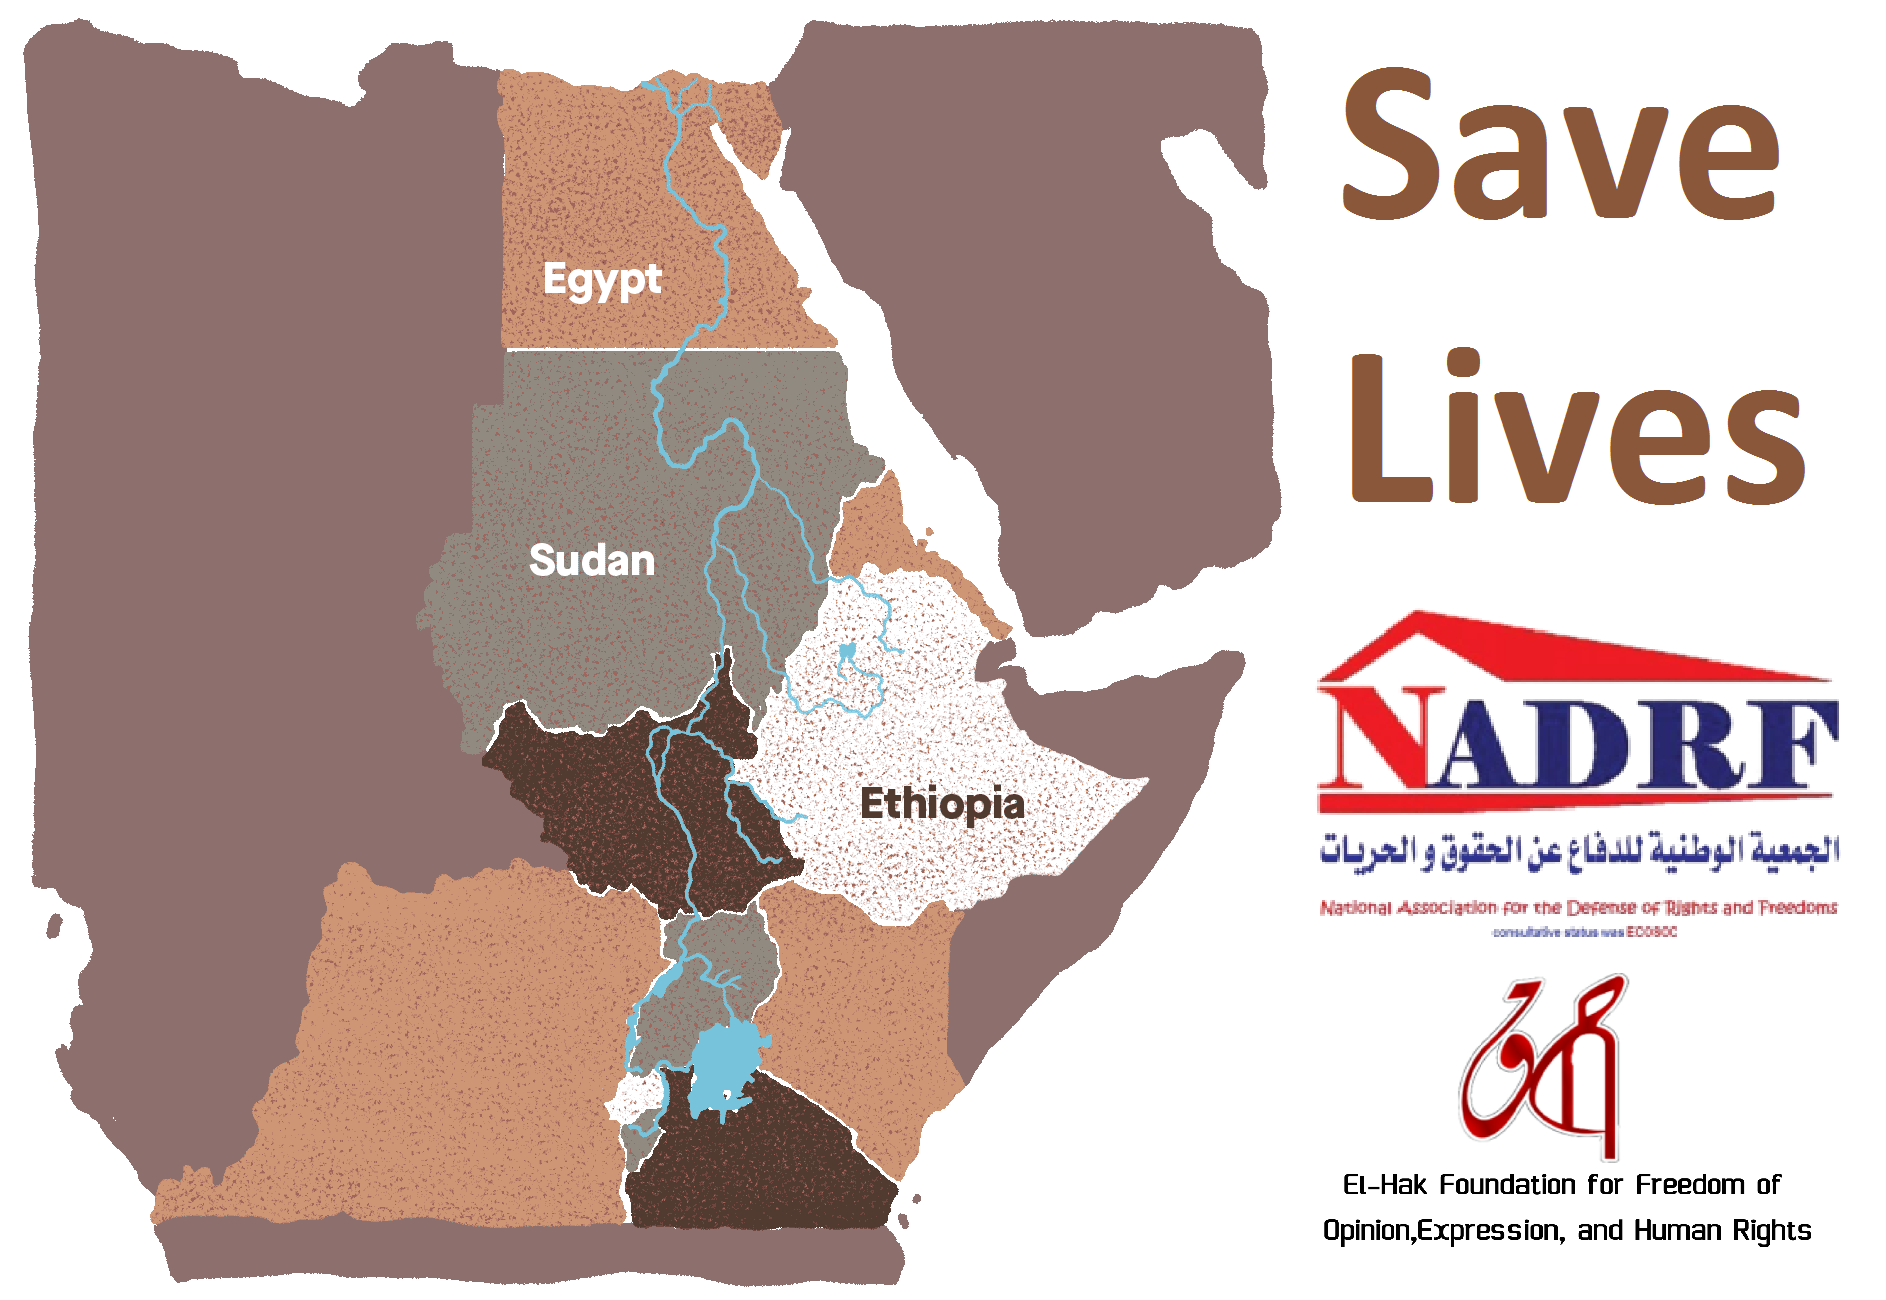 حملة ” انقذوا الأرواح انقذوا أفريقيا ” تدين بشدة قرار إثيوبيا المنفرد بملء خزان سد النهضة